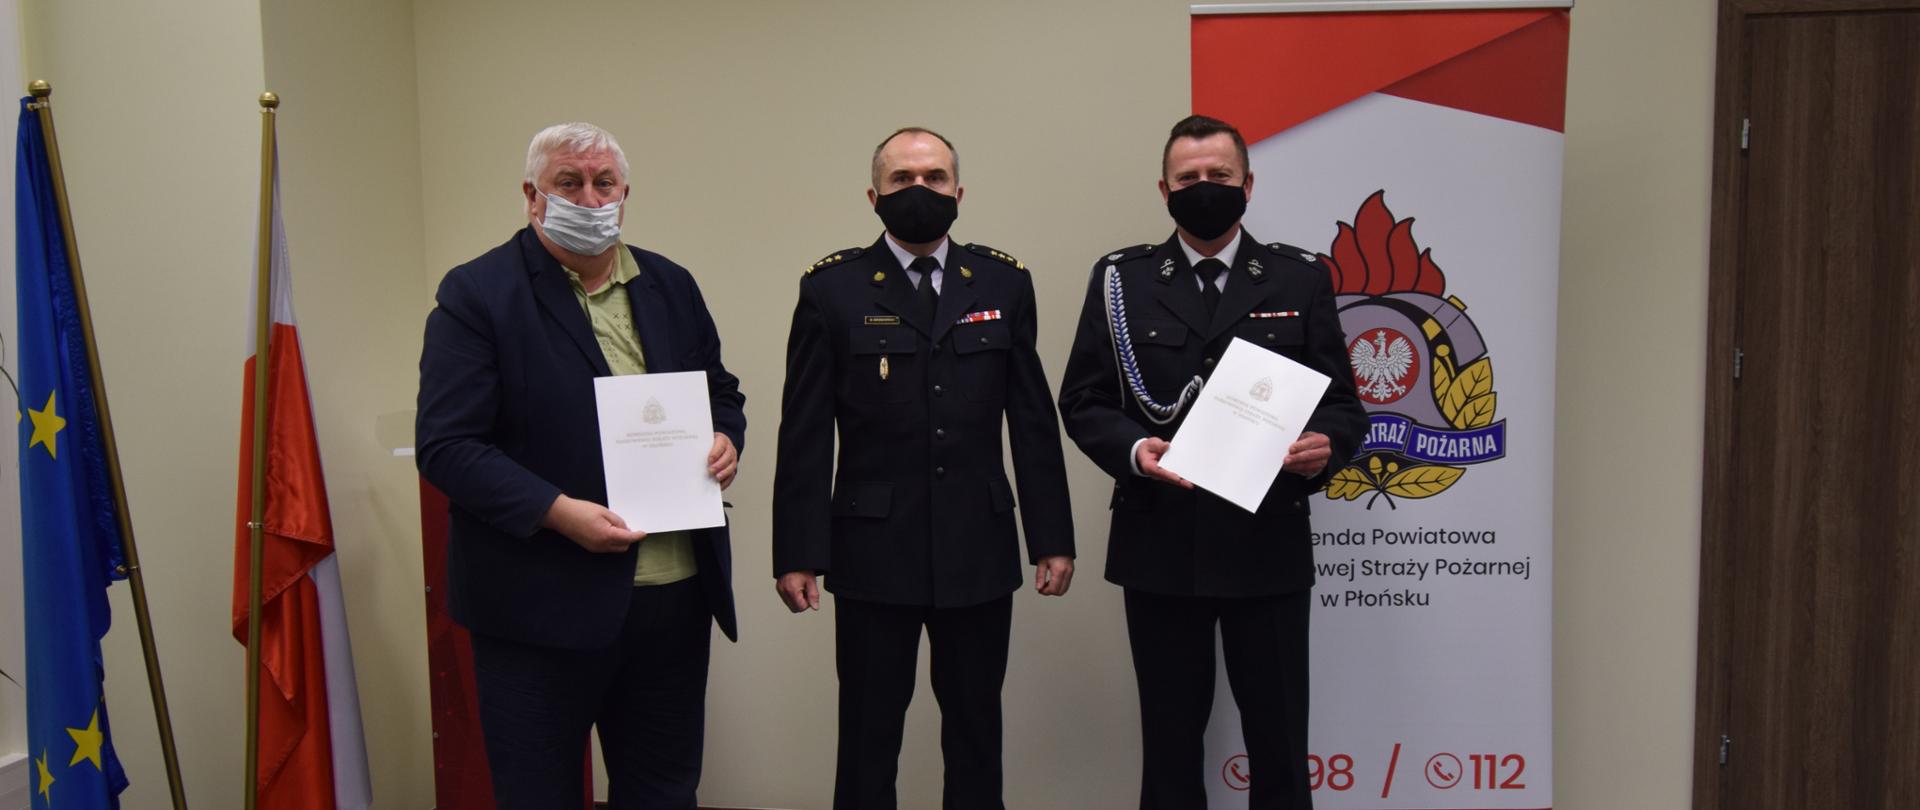 Na zdjęciu stoją trzy osoby z podpisanymi umowami dotyczącymi włączenia OSP Kownaty do KSRG. W tle po lewej stronie znajdują się flagi Polski i Unii Europejskiej. Po prawej stronie znajduje się logo PSP